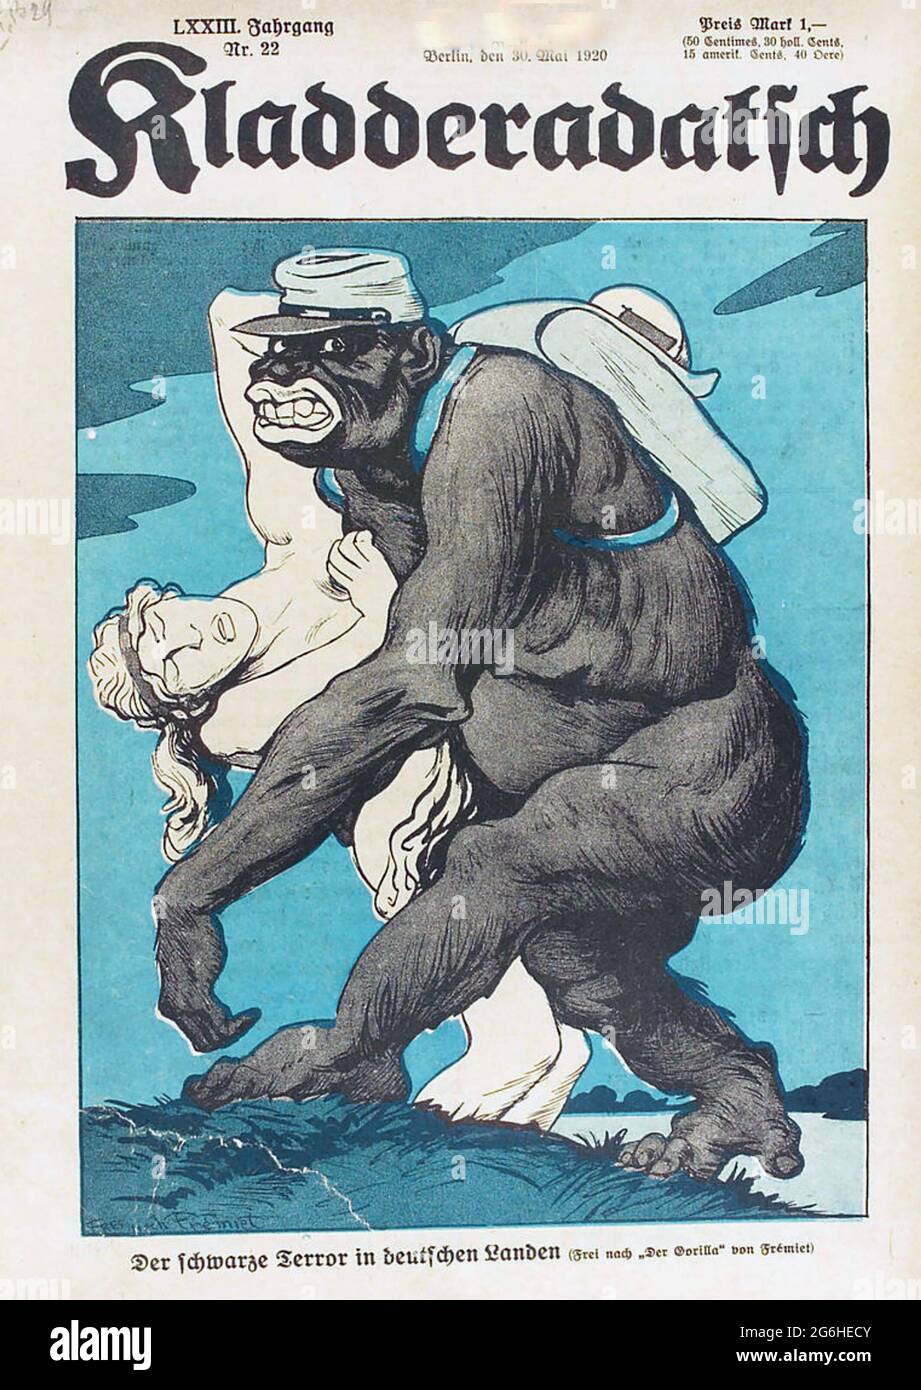 KLADDERADATSCH magazine satirique allemand. Couverture de l'édition de mai 1920 moquant les ambitions coloniales françaises. Banque D'Images